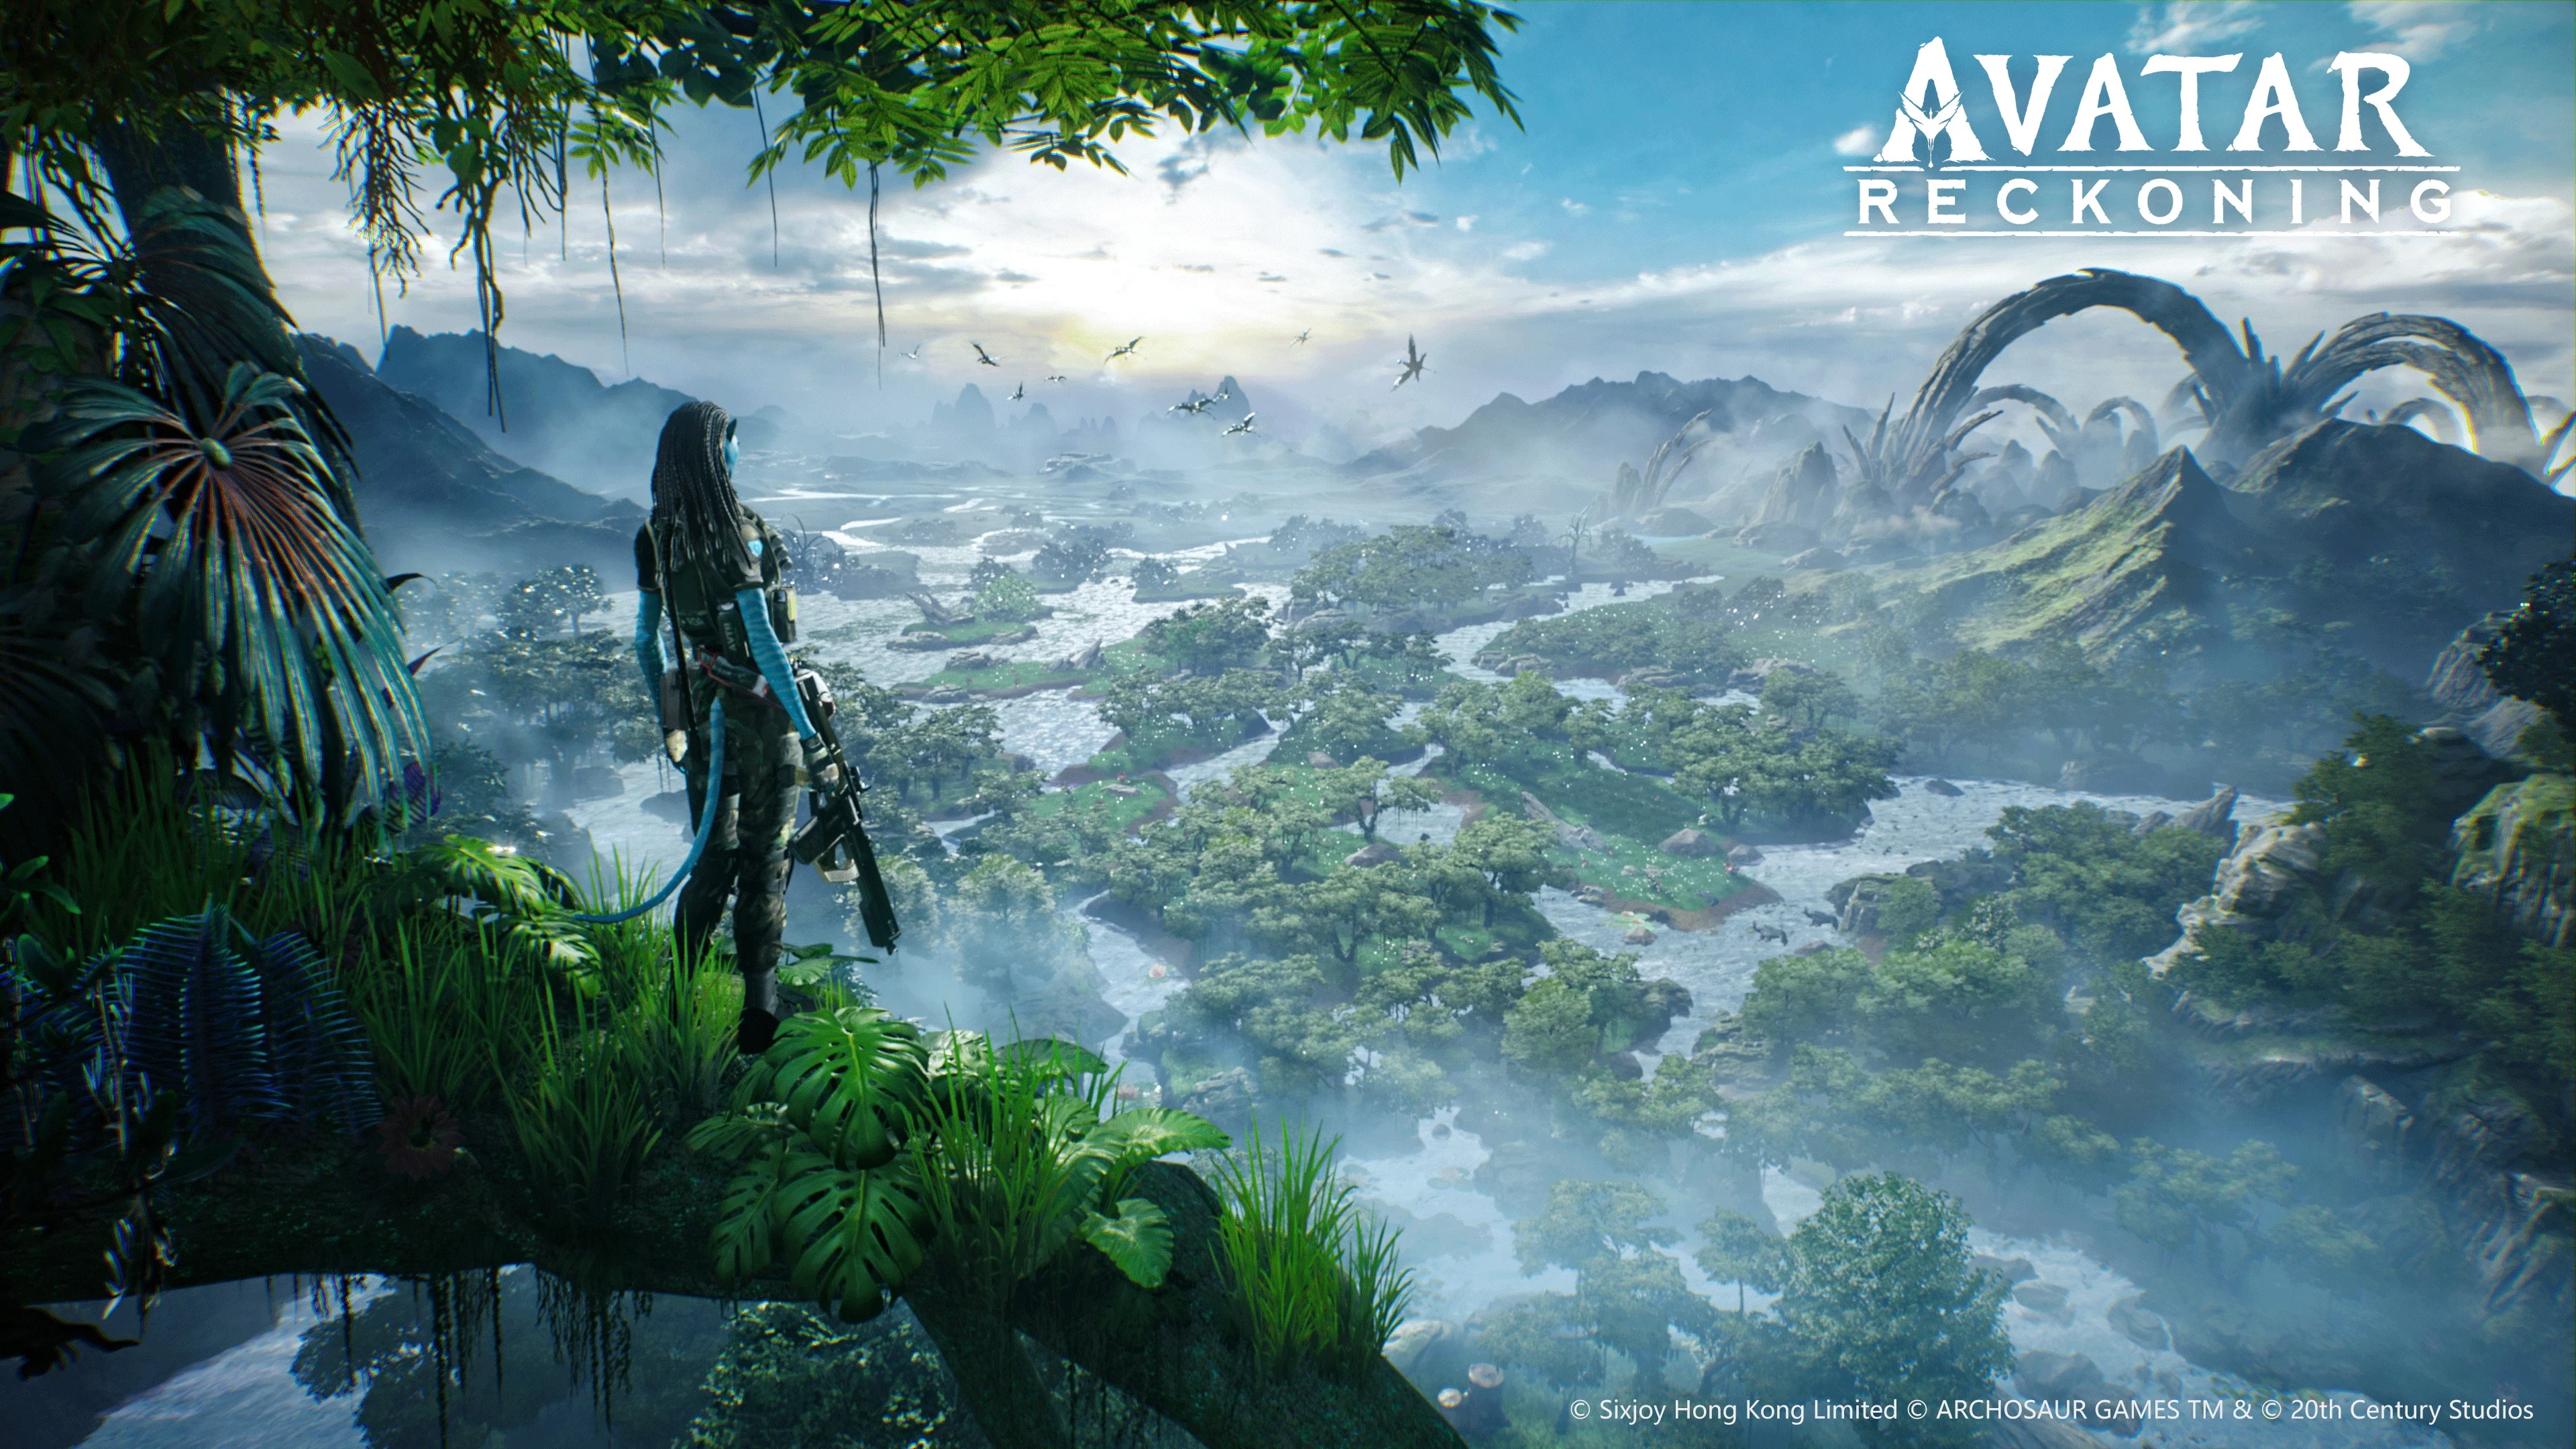 Avatar anunciado: Reconing - un juego móvil sobre Pandora